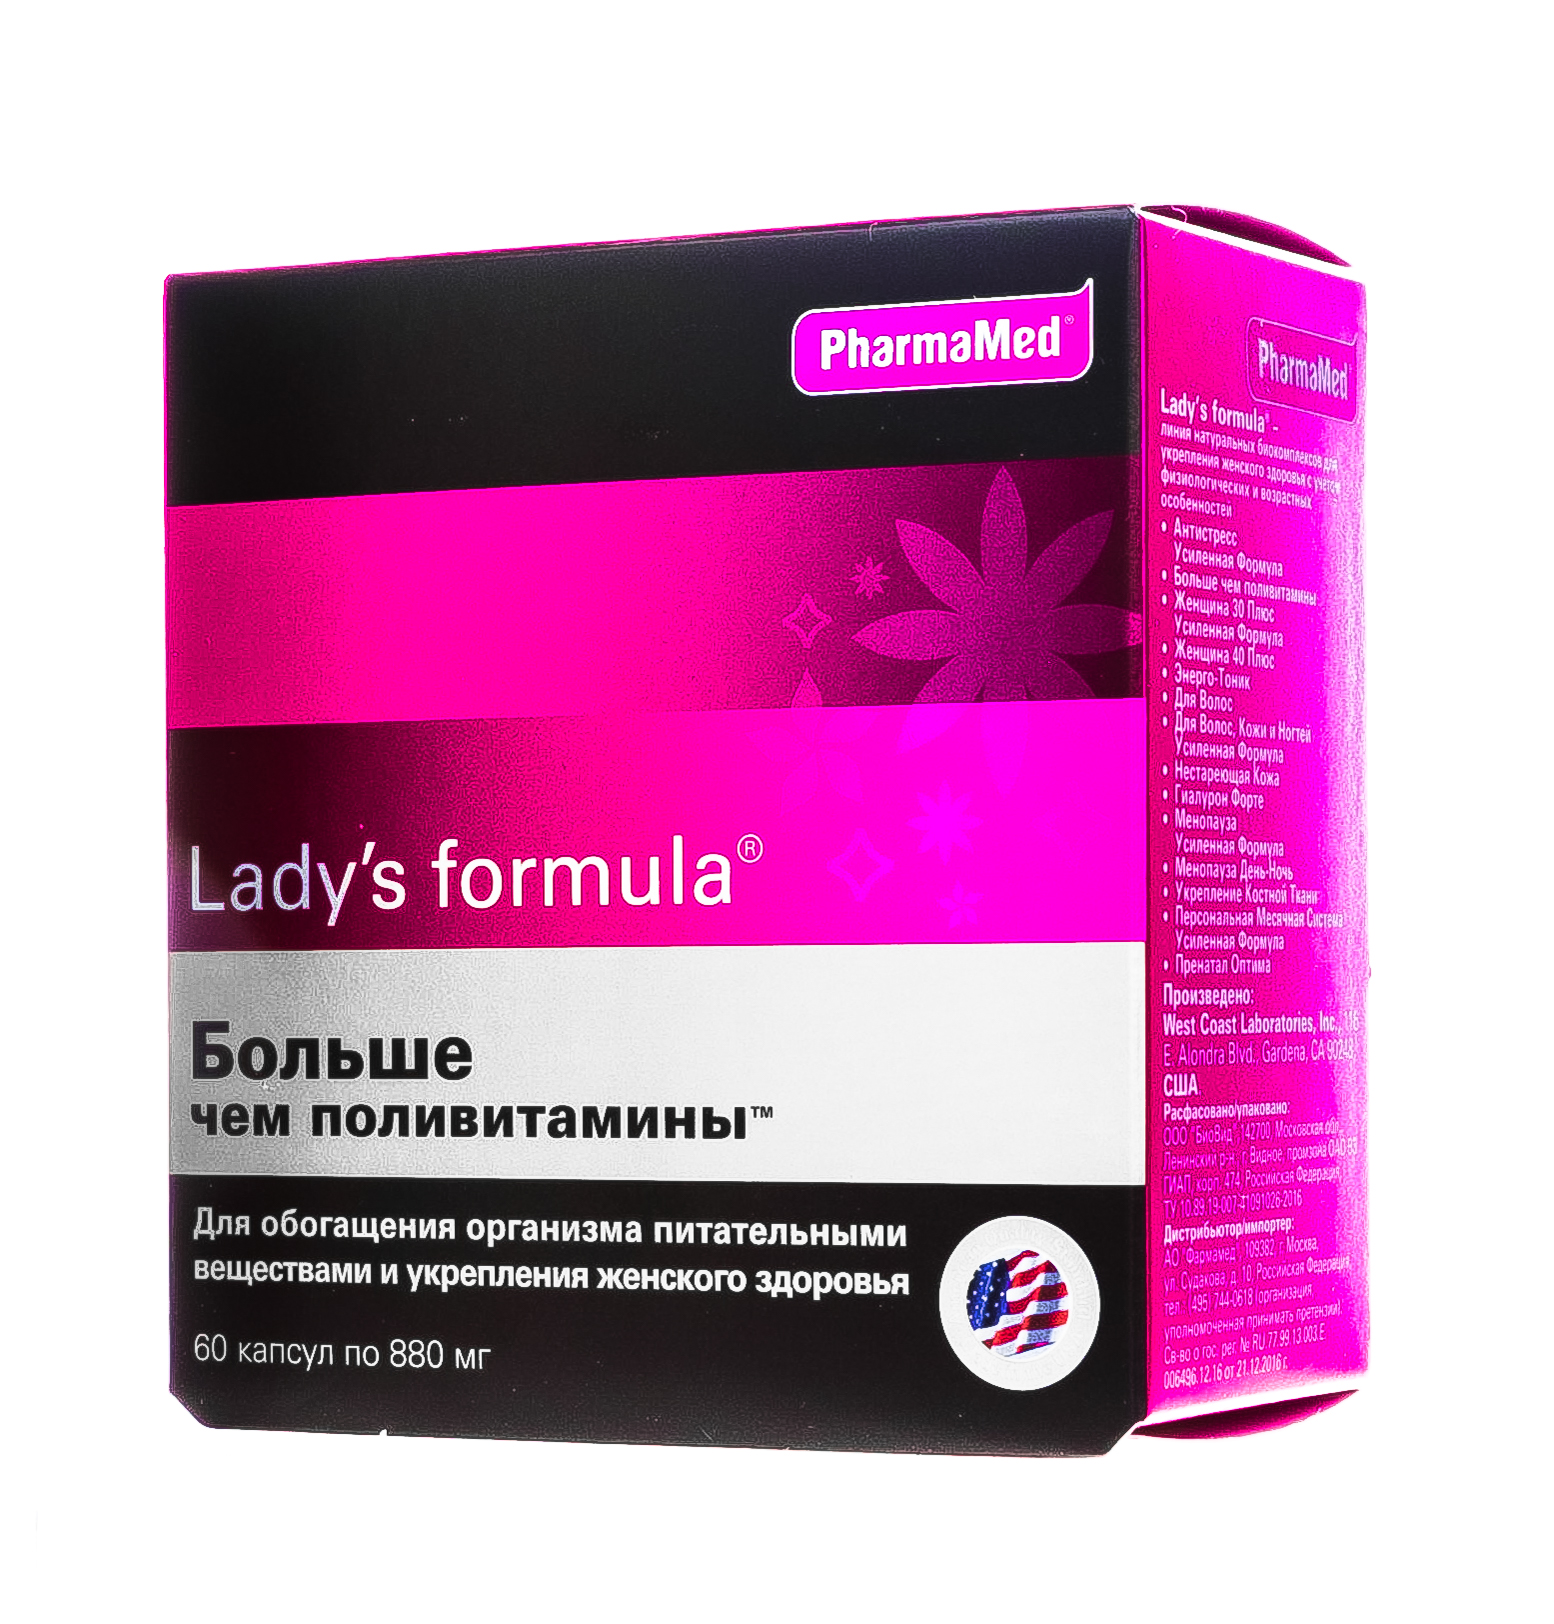 Ледис формула менопауза купить в аптеке. Биодобавки день- ночь ледис формула. Lady`s Formula нестареющая кожа PHARMAMED. Леди-с формула 900мг н30.